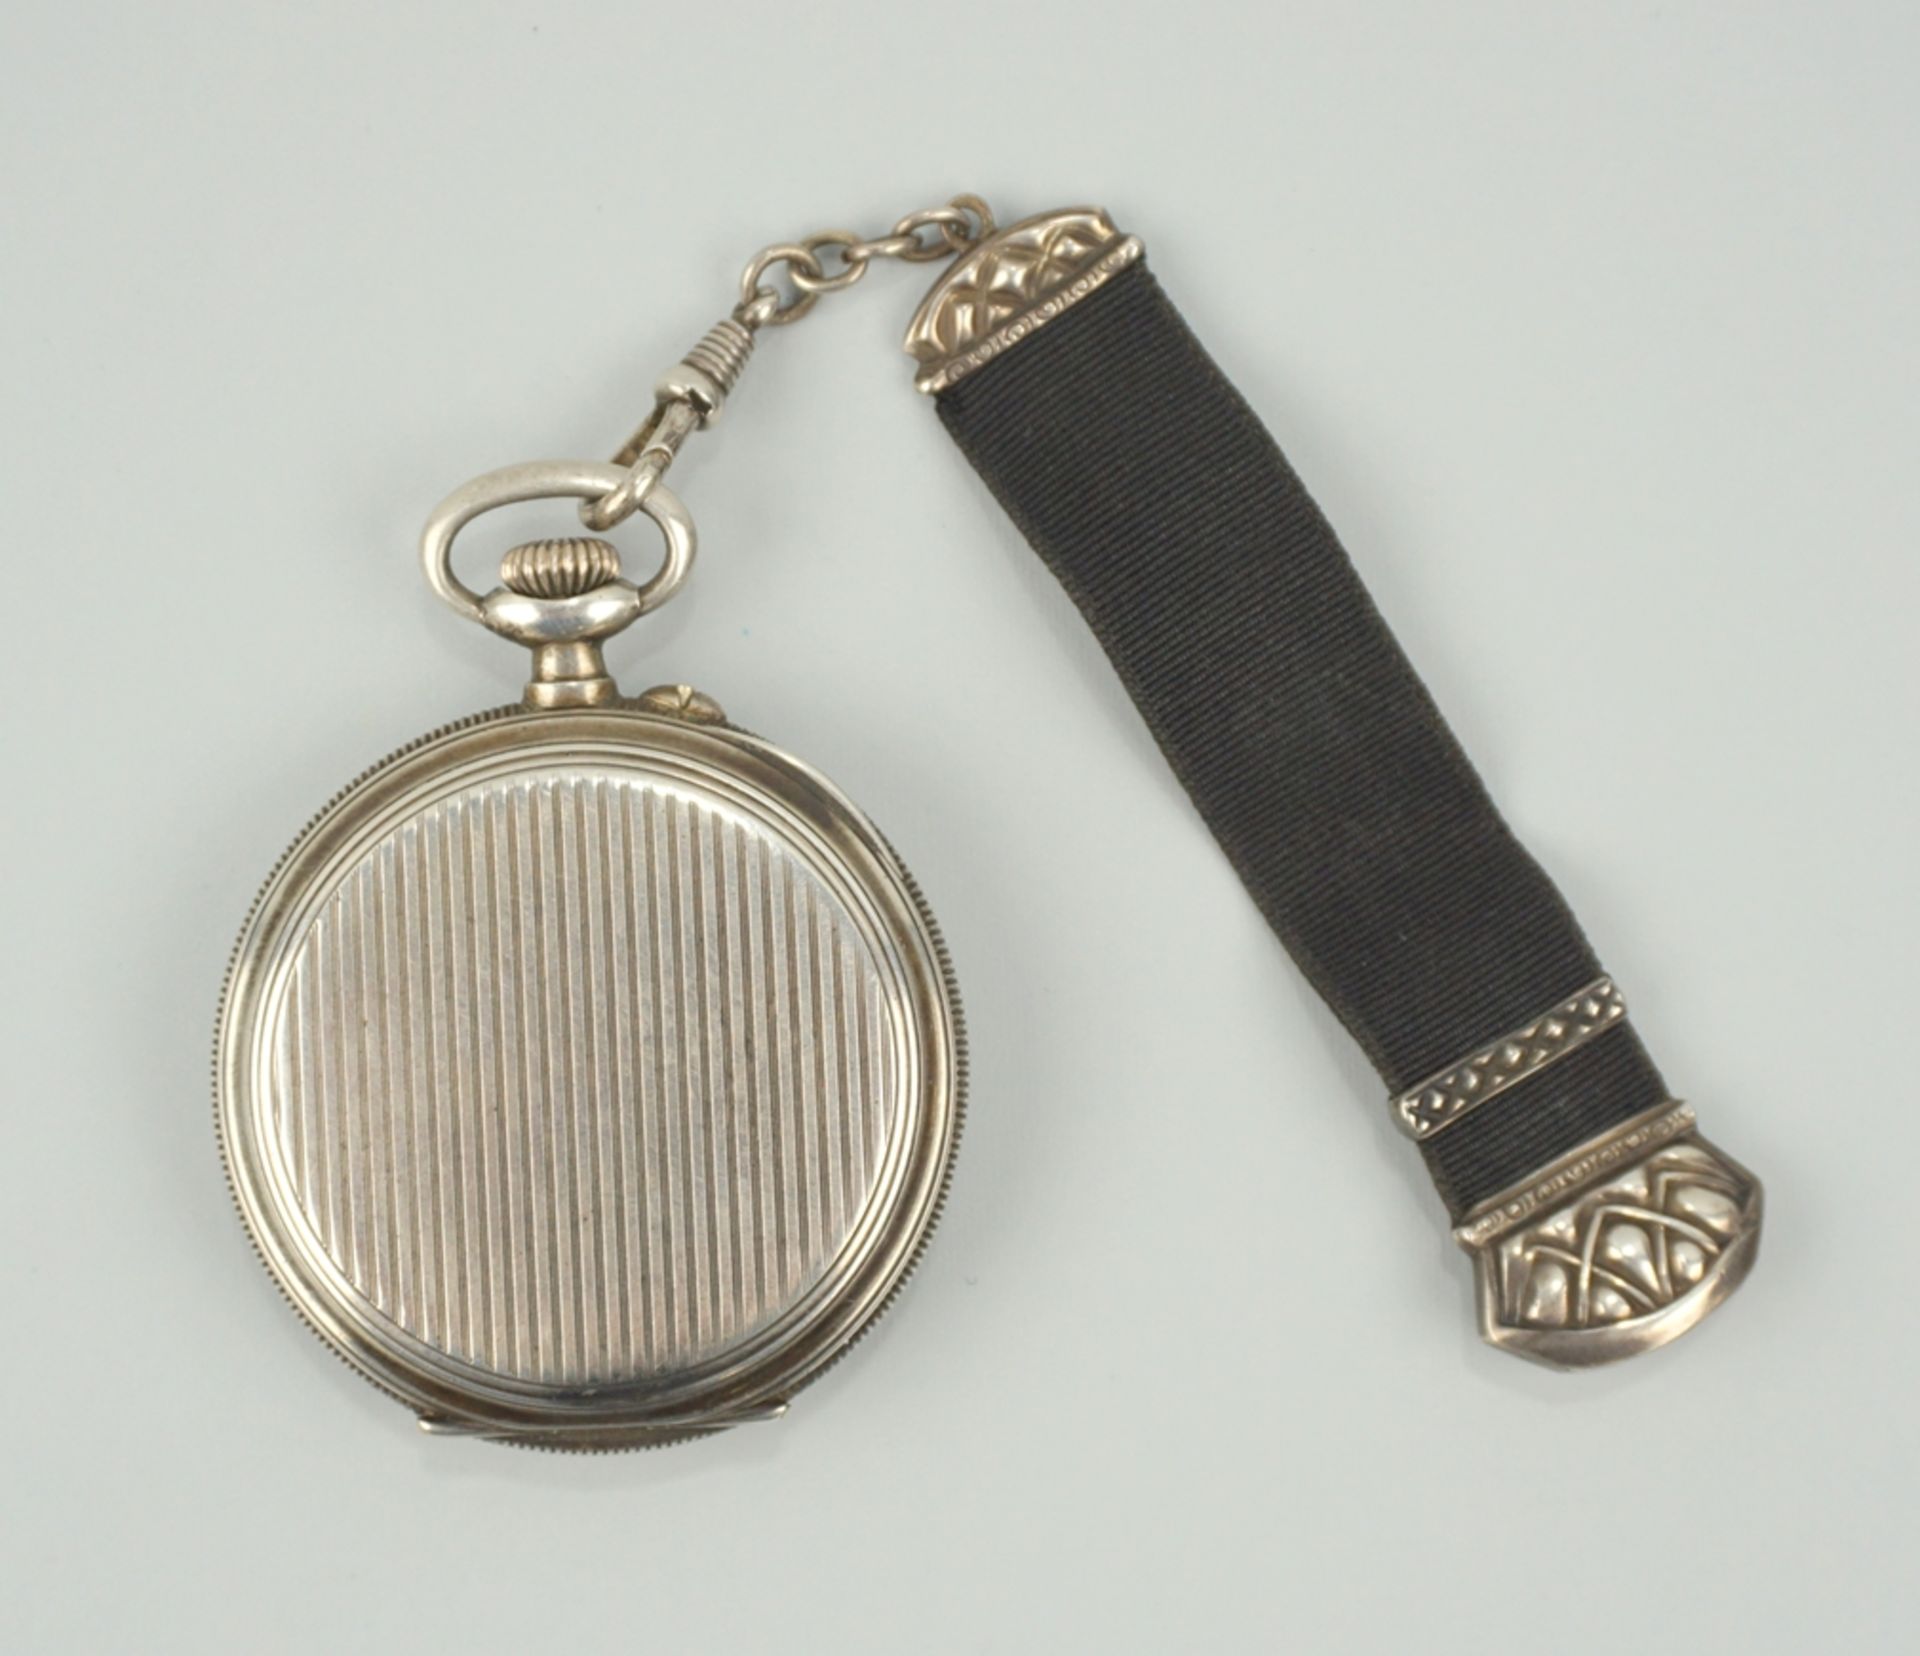 Taschenuhr-Chronometer C.Crettiez, Frankreich, um 1900 - Image 2 of 3